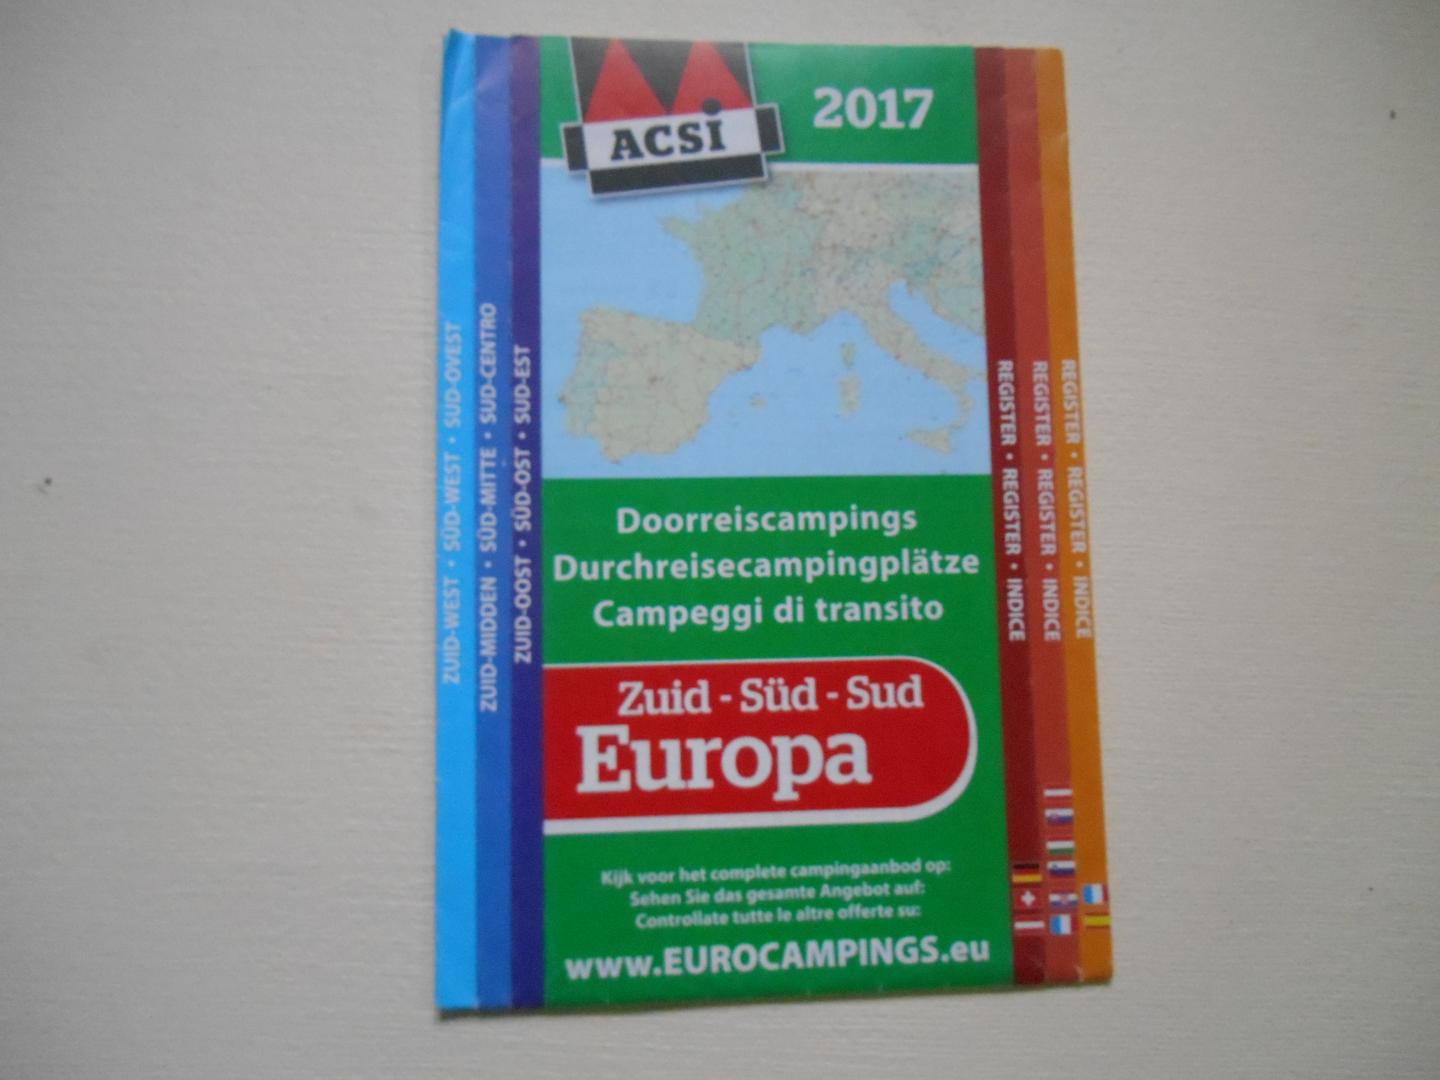  - Acsi 2017 Doorreiscampings Zuid Europa